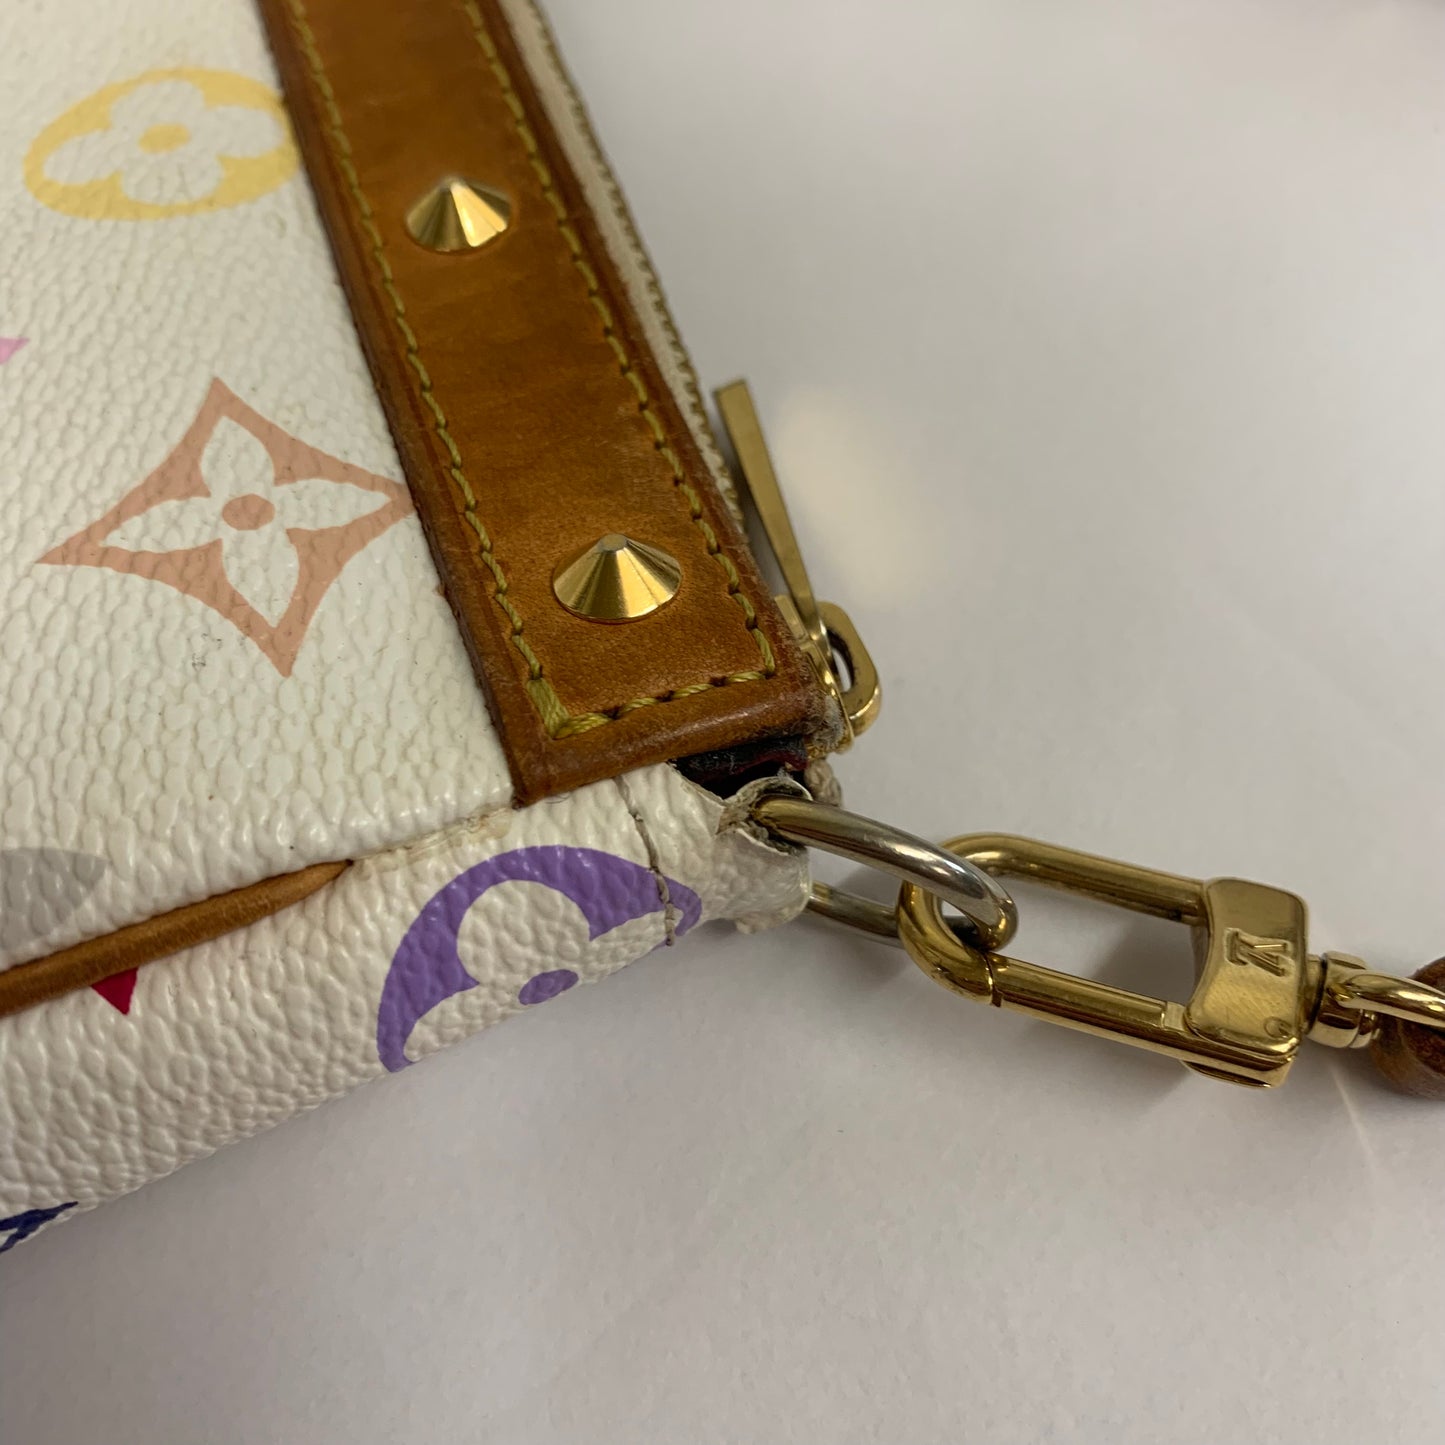 Pochette Accessoires Handbag in White Multicolour Monogram 2003 [ReSale]